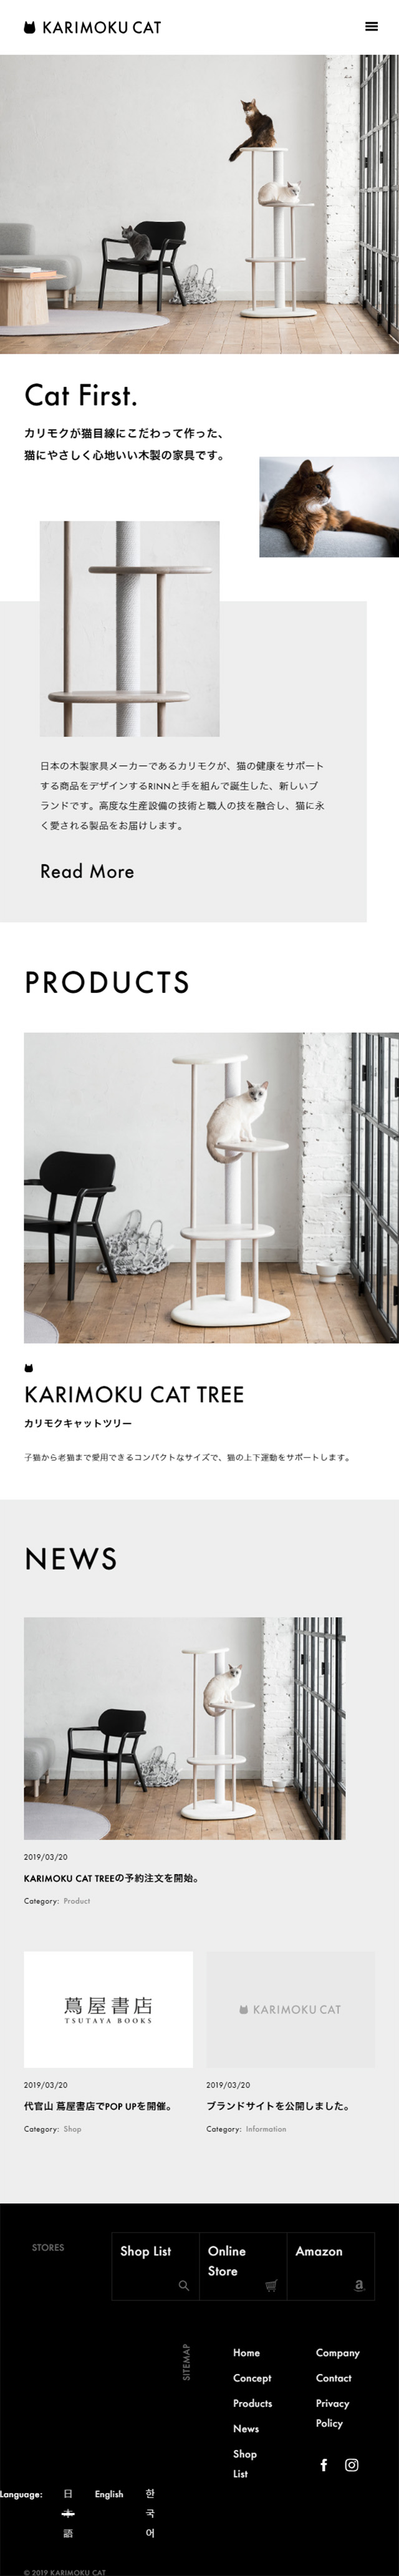 KARIMOKU CAT_sp_1